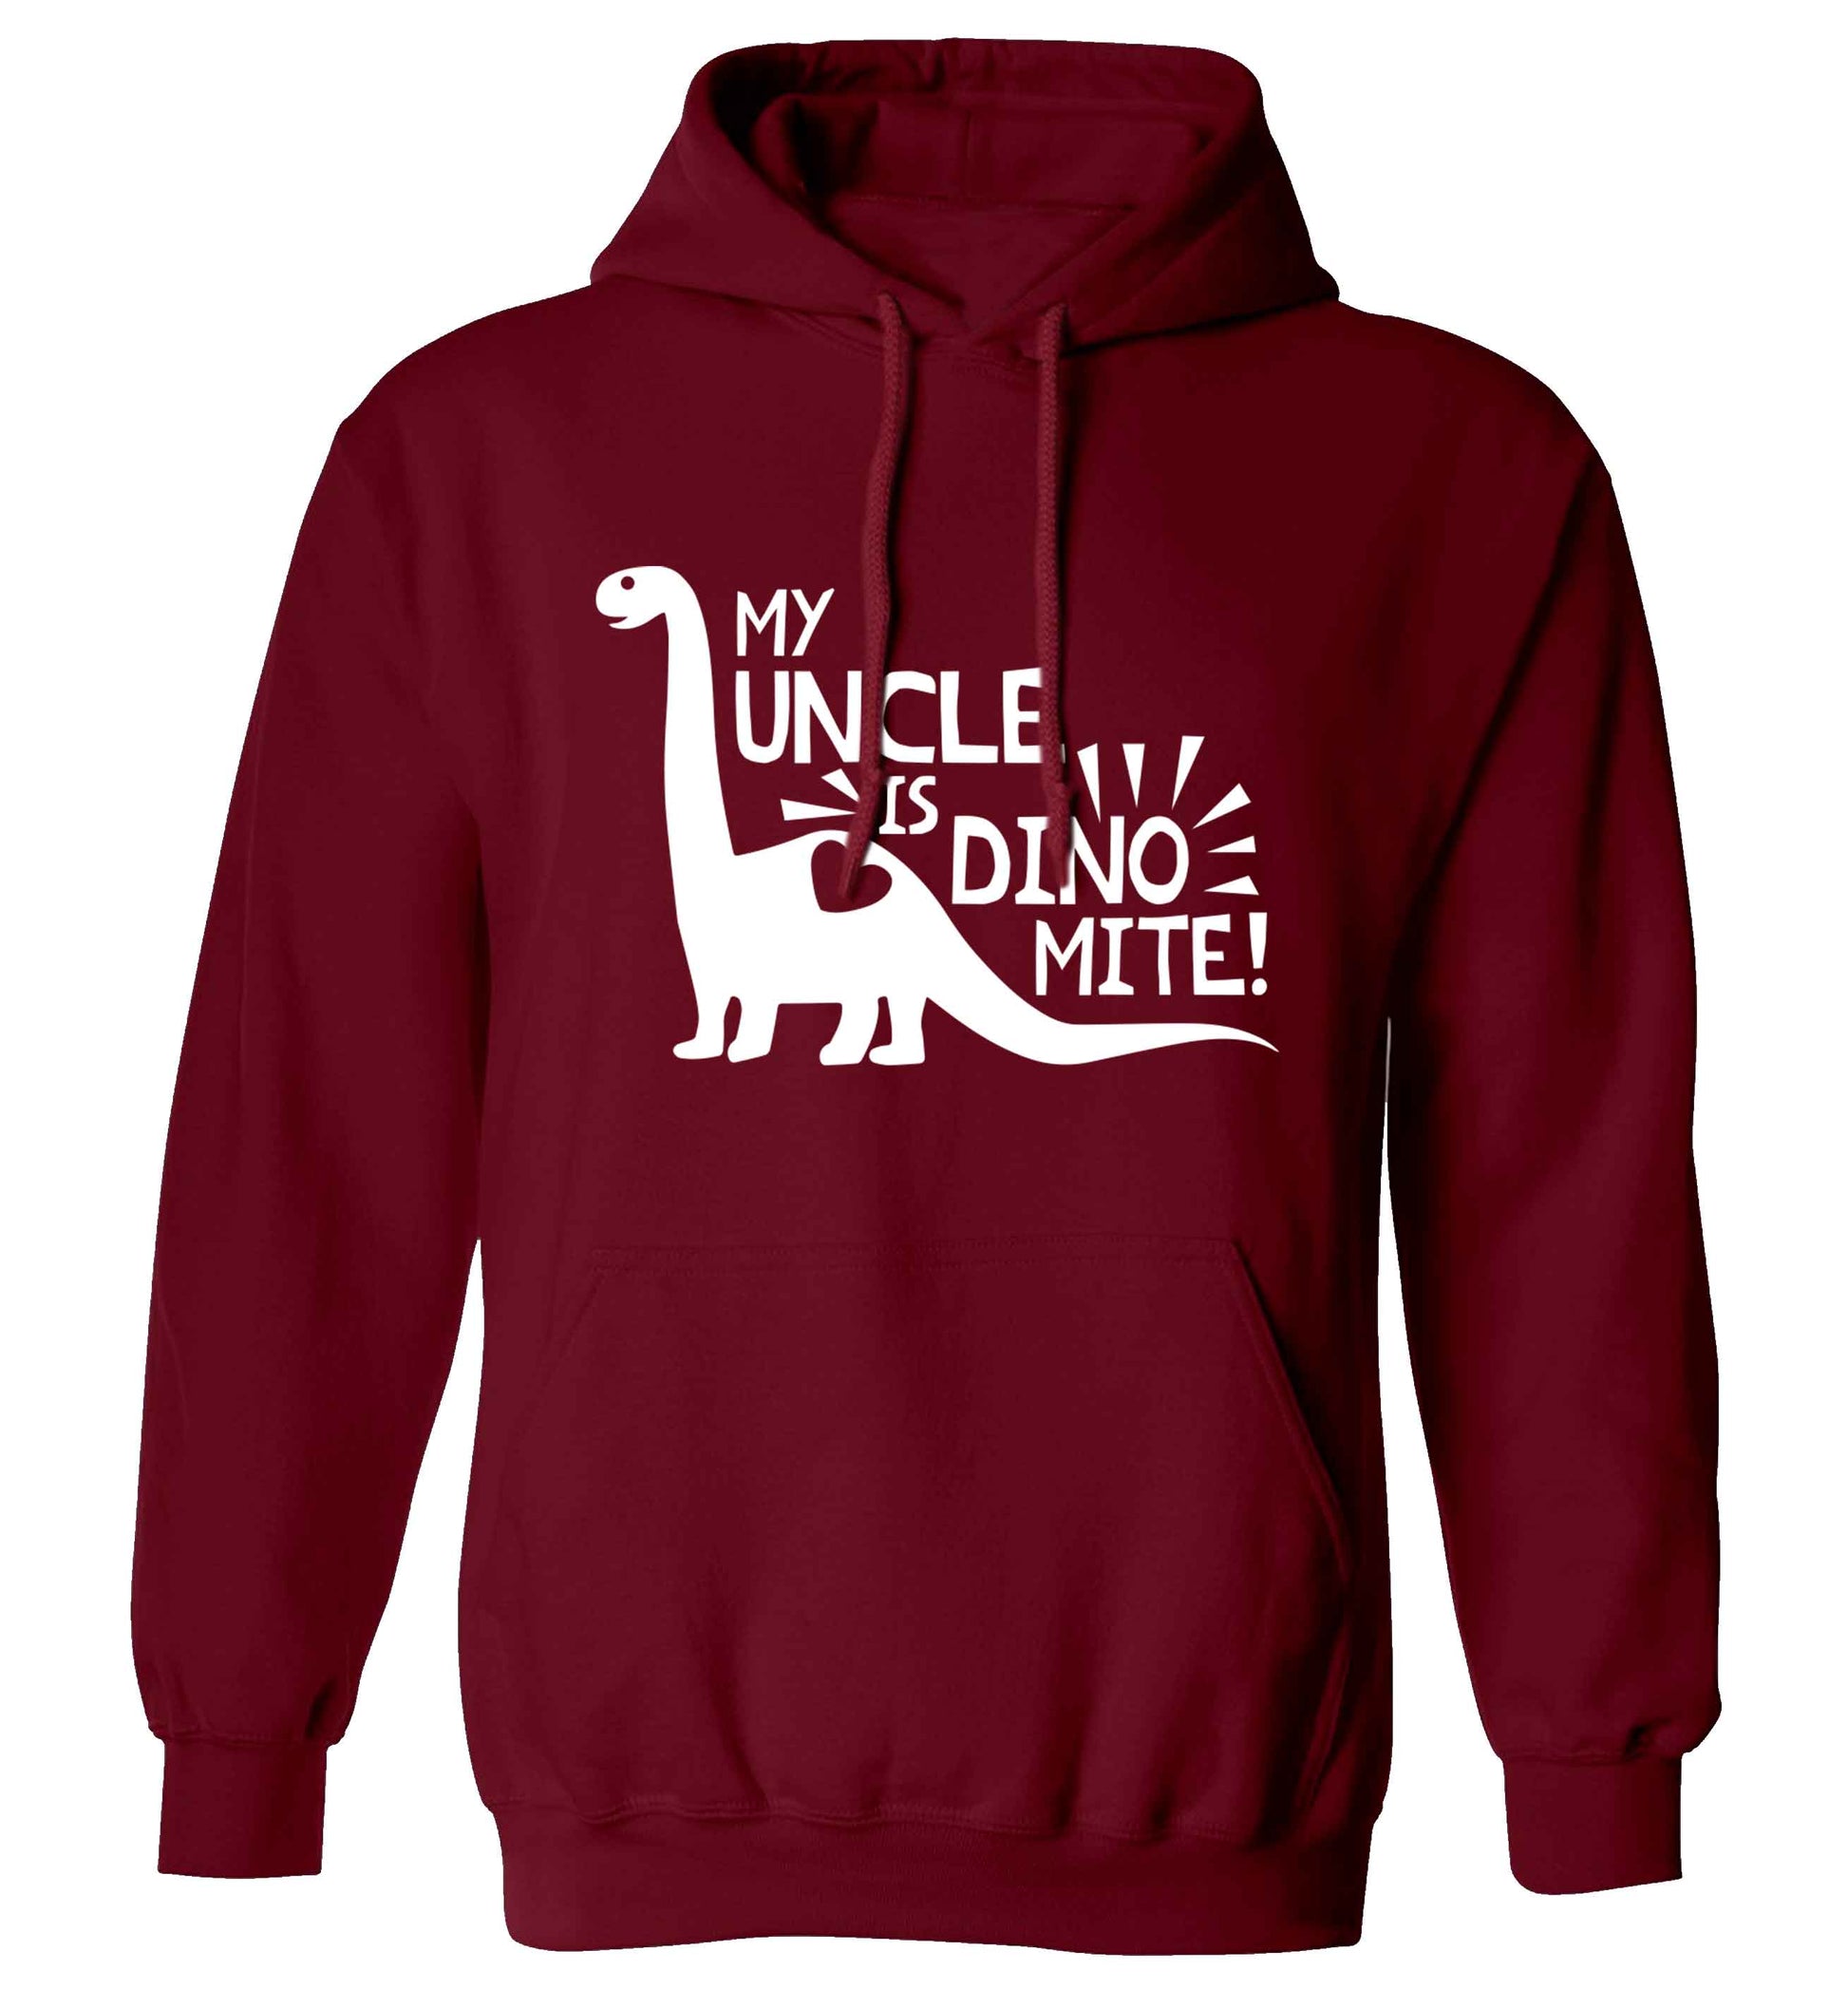 My uncle is dinomite! adults unisex maroon hoodie 2XL